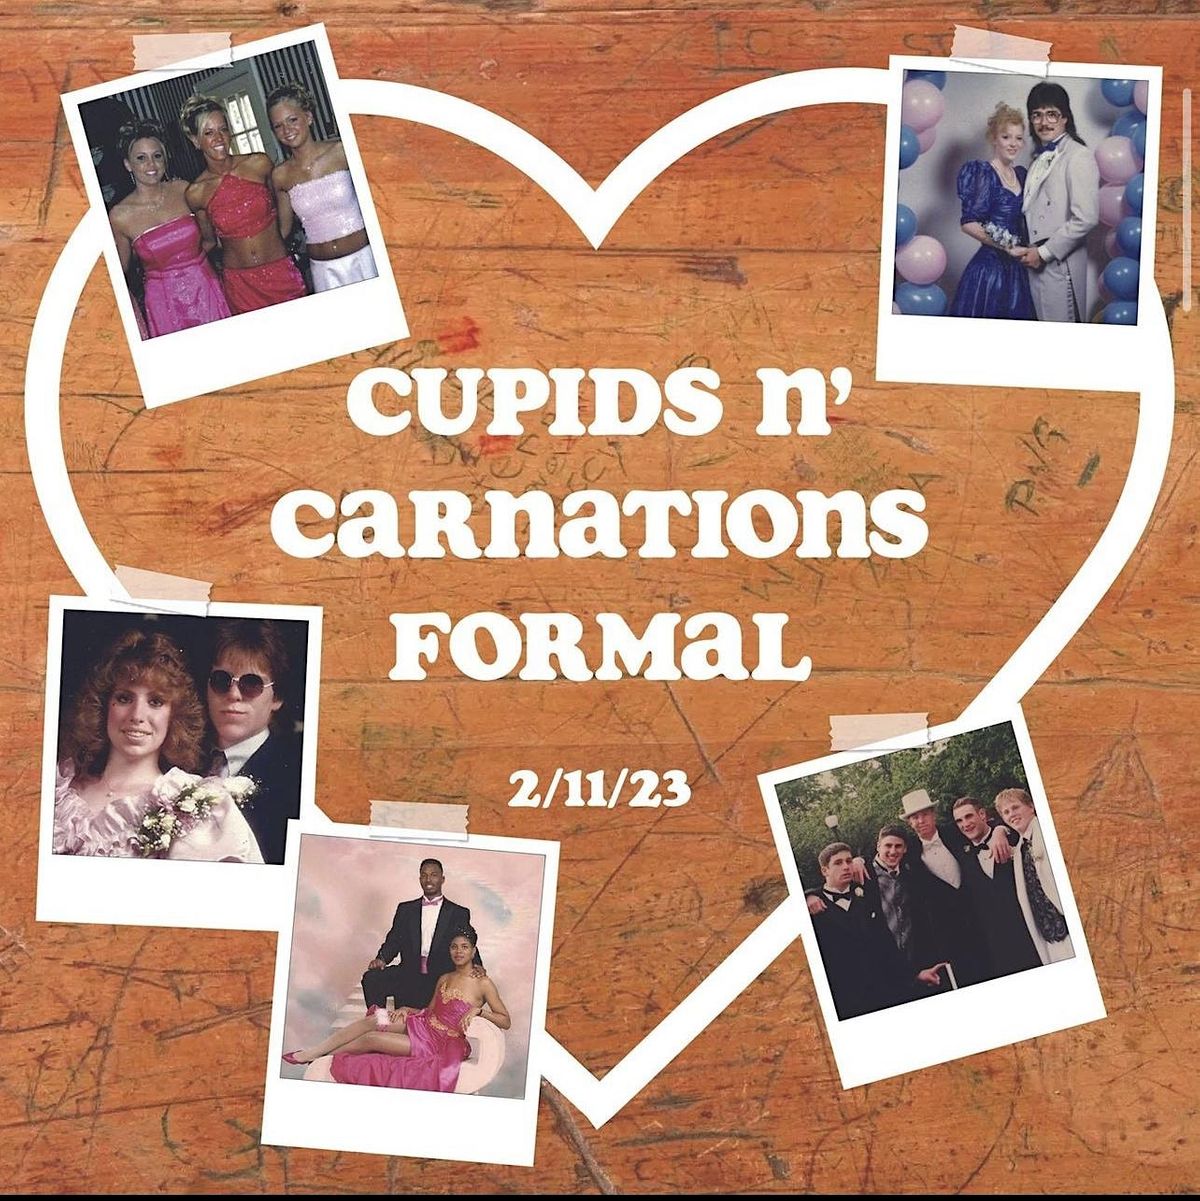 Cupids N' Carnations Formal